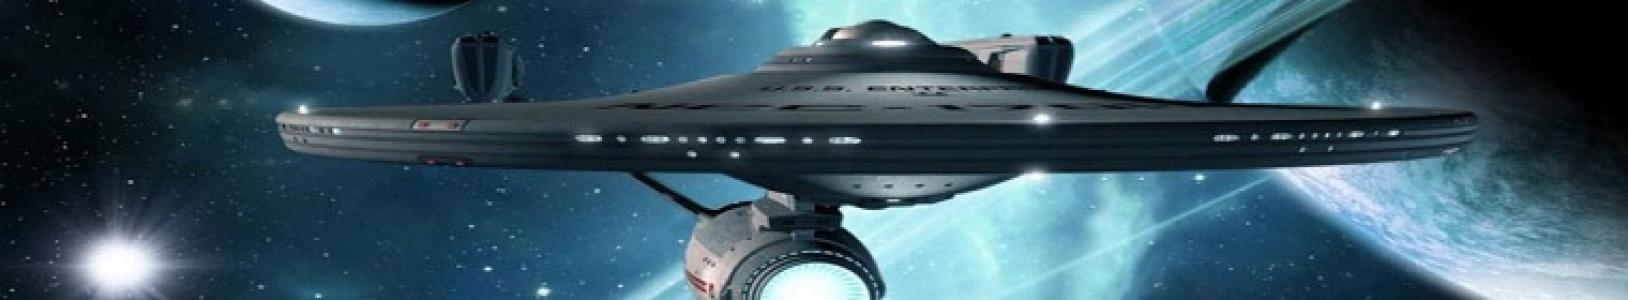 Star Trek Online banner